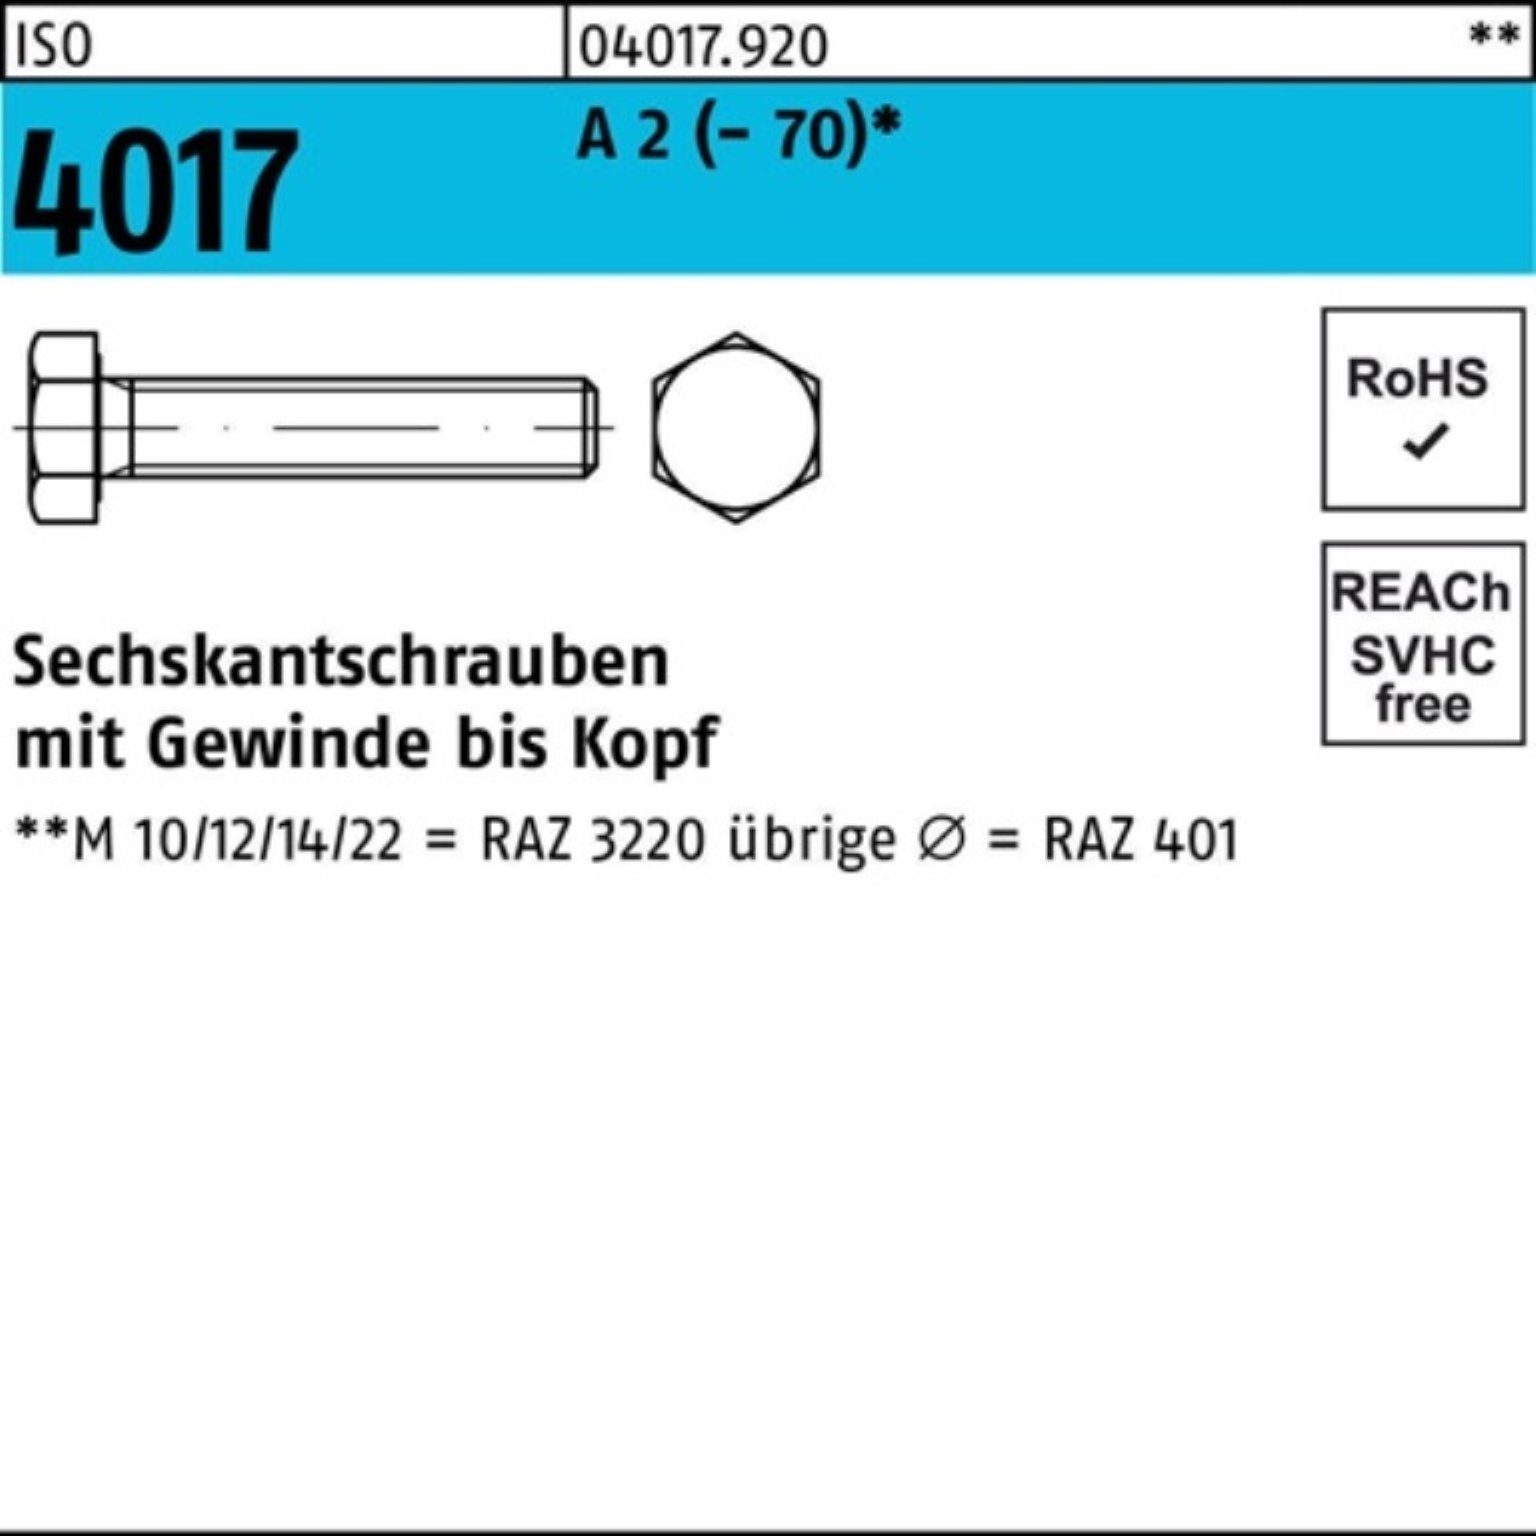 Bufab Sechskantschraube 100er Pack Sechskantschraube ISO 4017 VG M8x 55 A 2 (70) 100 Stück